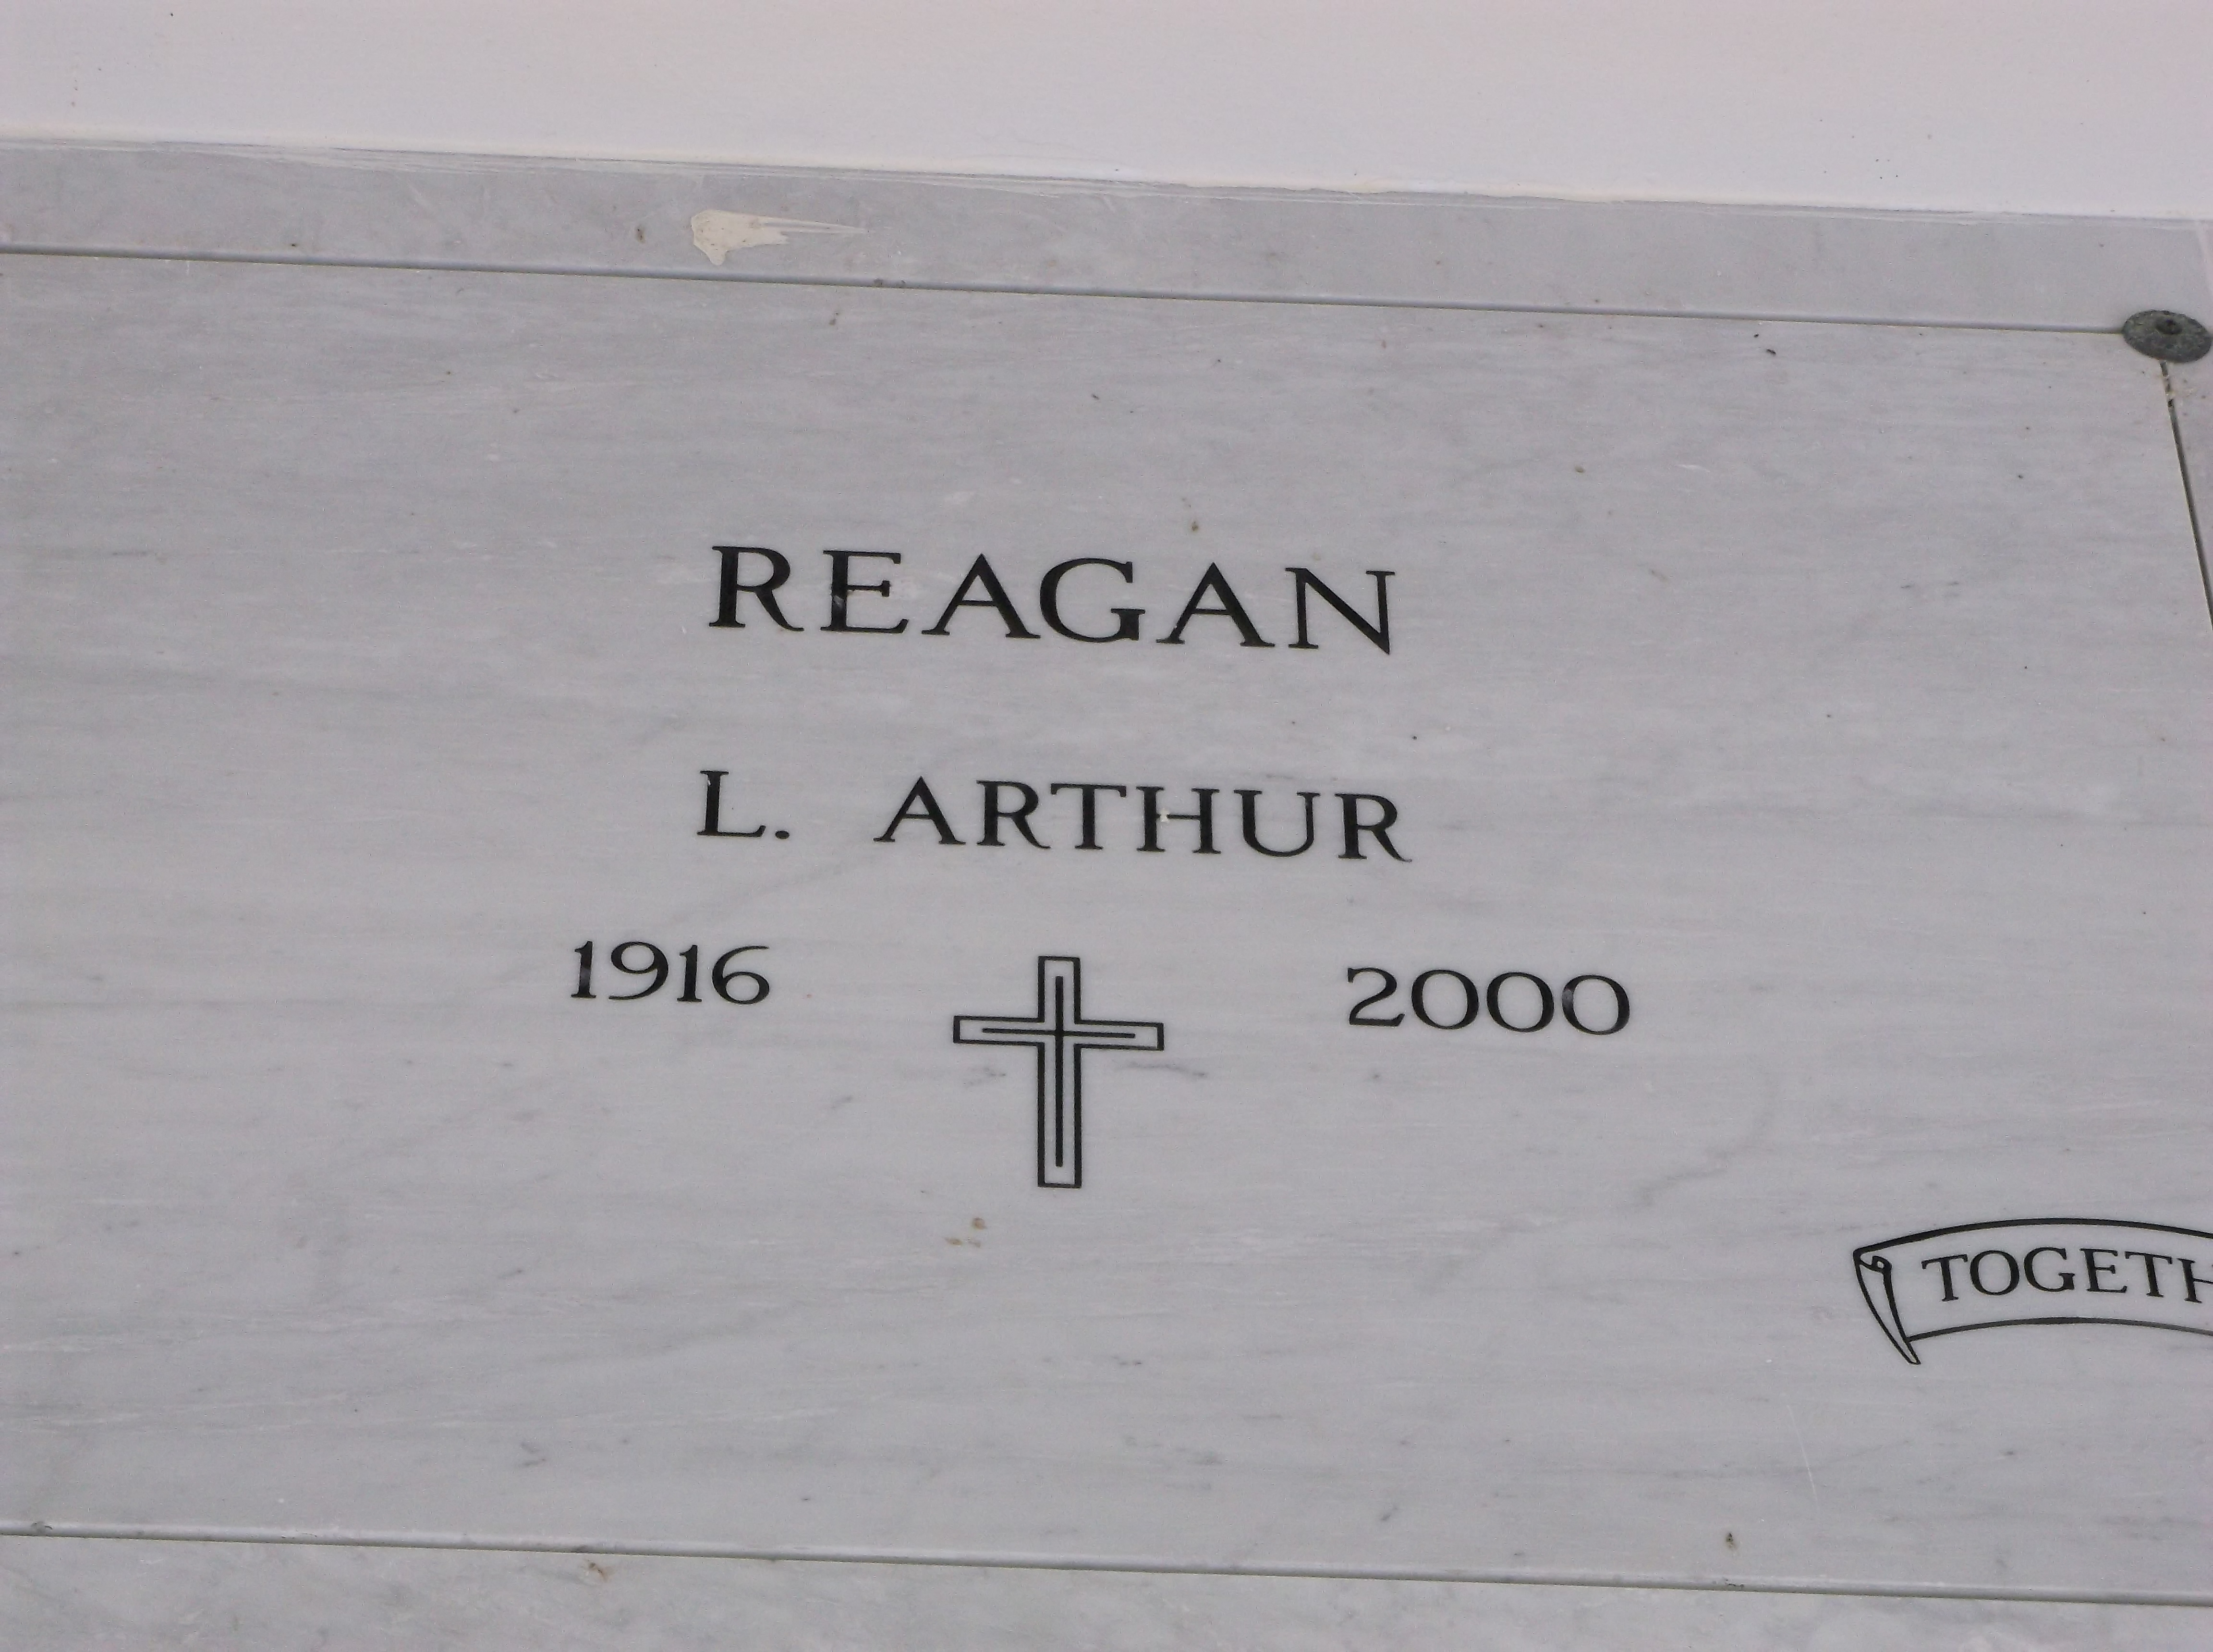 L Arthur Reagan